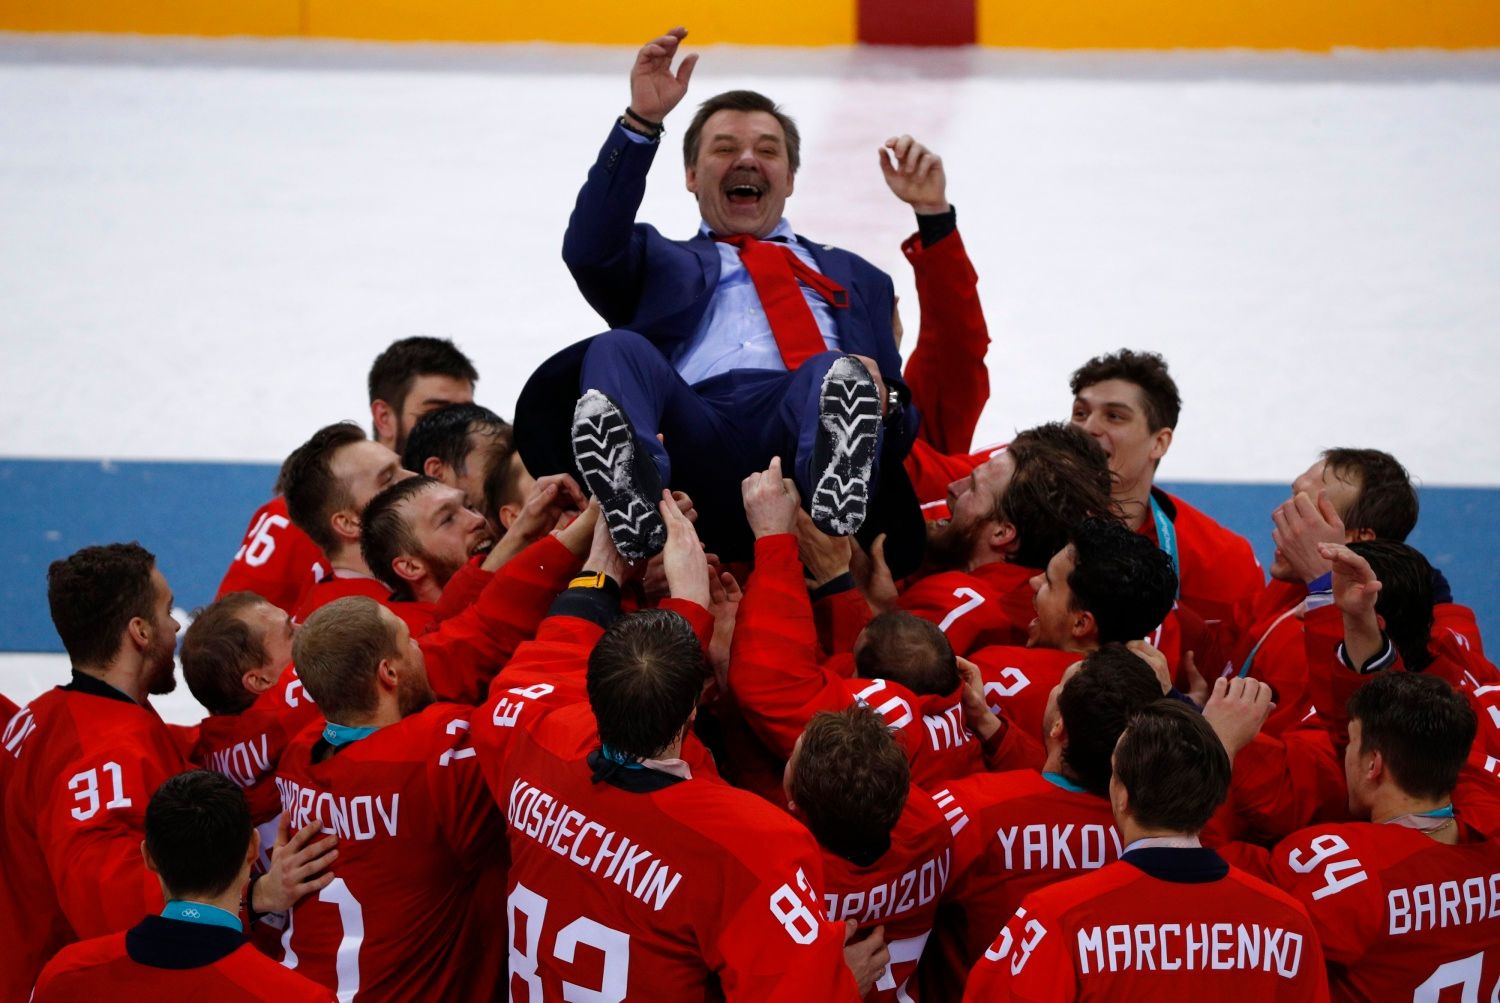 Das russische Eishockey ist vom Chaos betroffen.  Wird es uns gelingen?  die Medien fragen vor den Olympischen Spielen